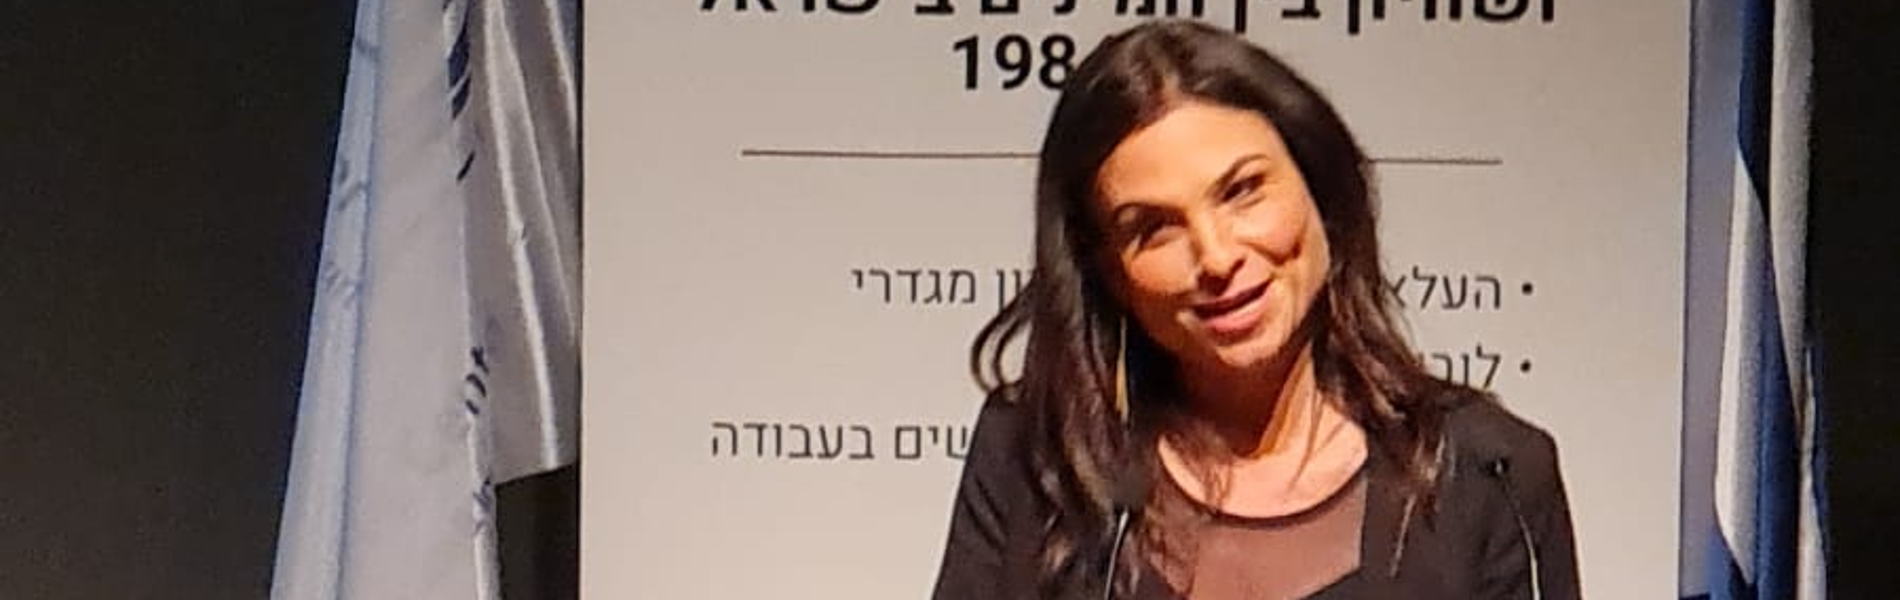 יעל ורד, זוכת 'מיס Fix the יוניברס': 'כל עוד נשים ממשיכות להירצח בישראל, צריך להמשיך בקמפיין'